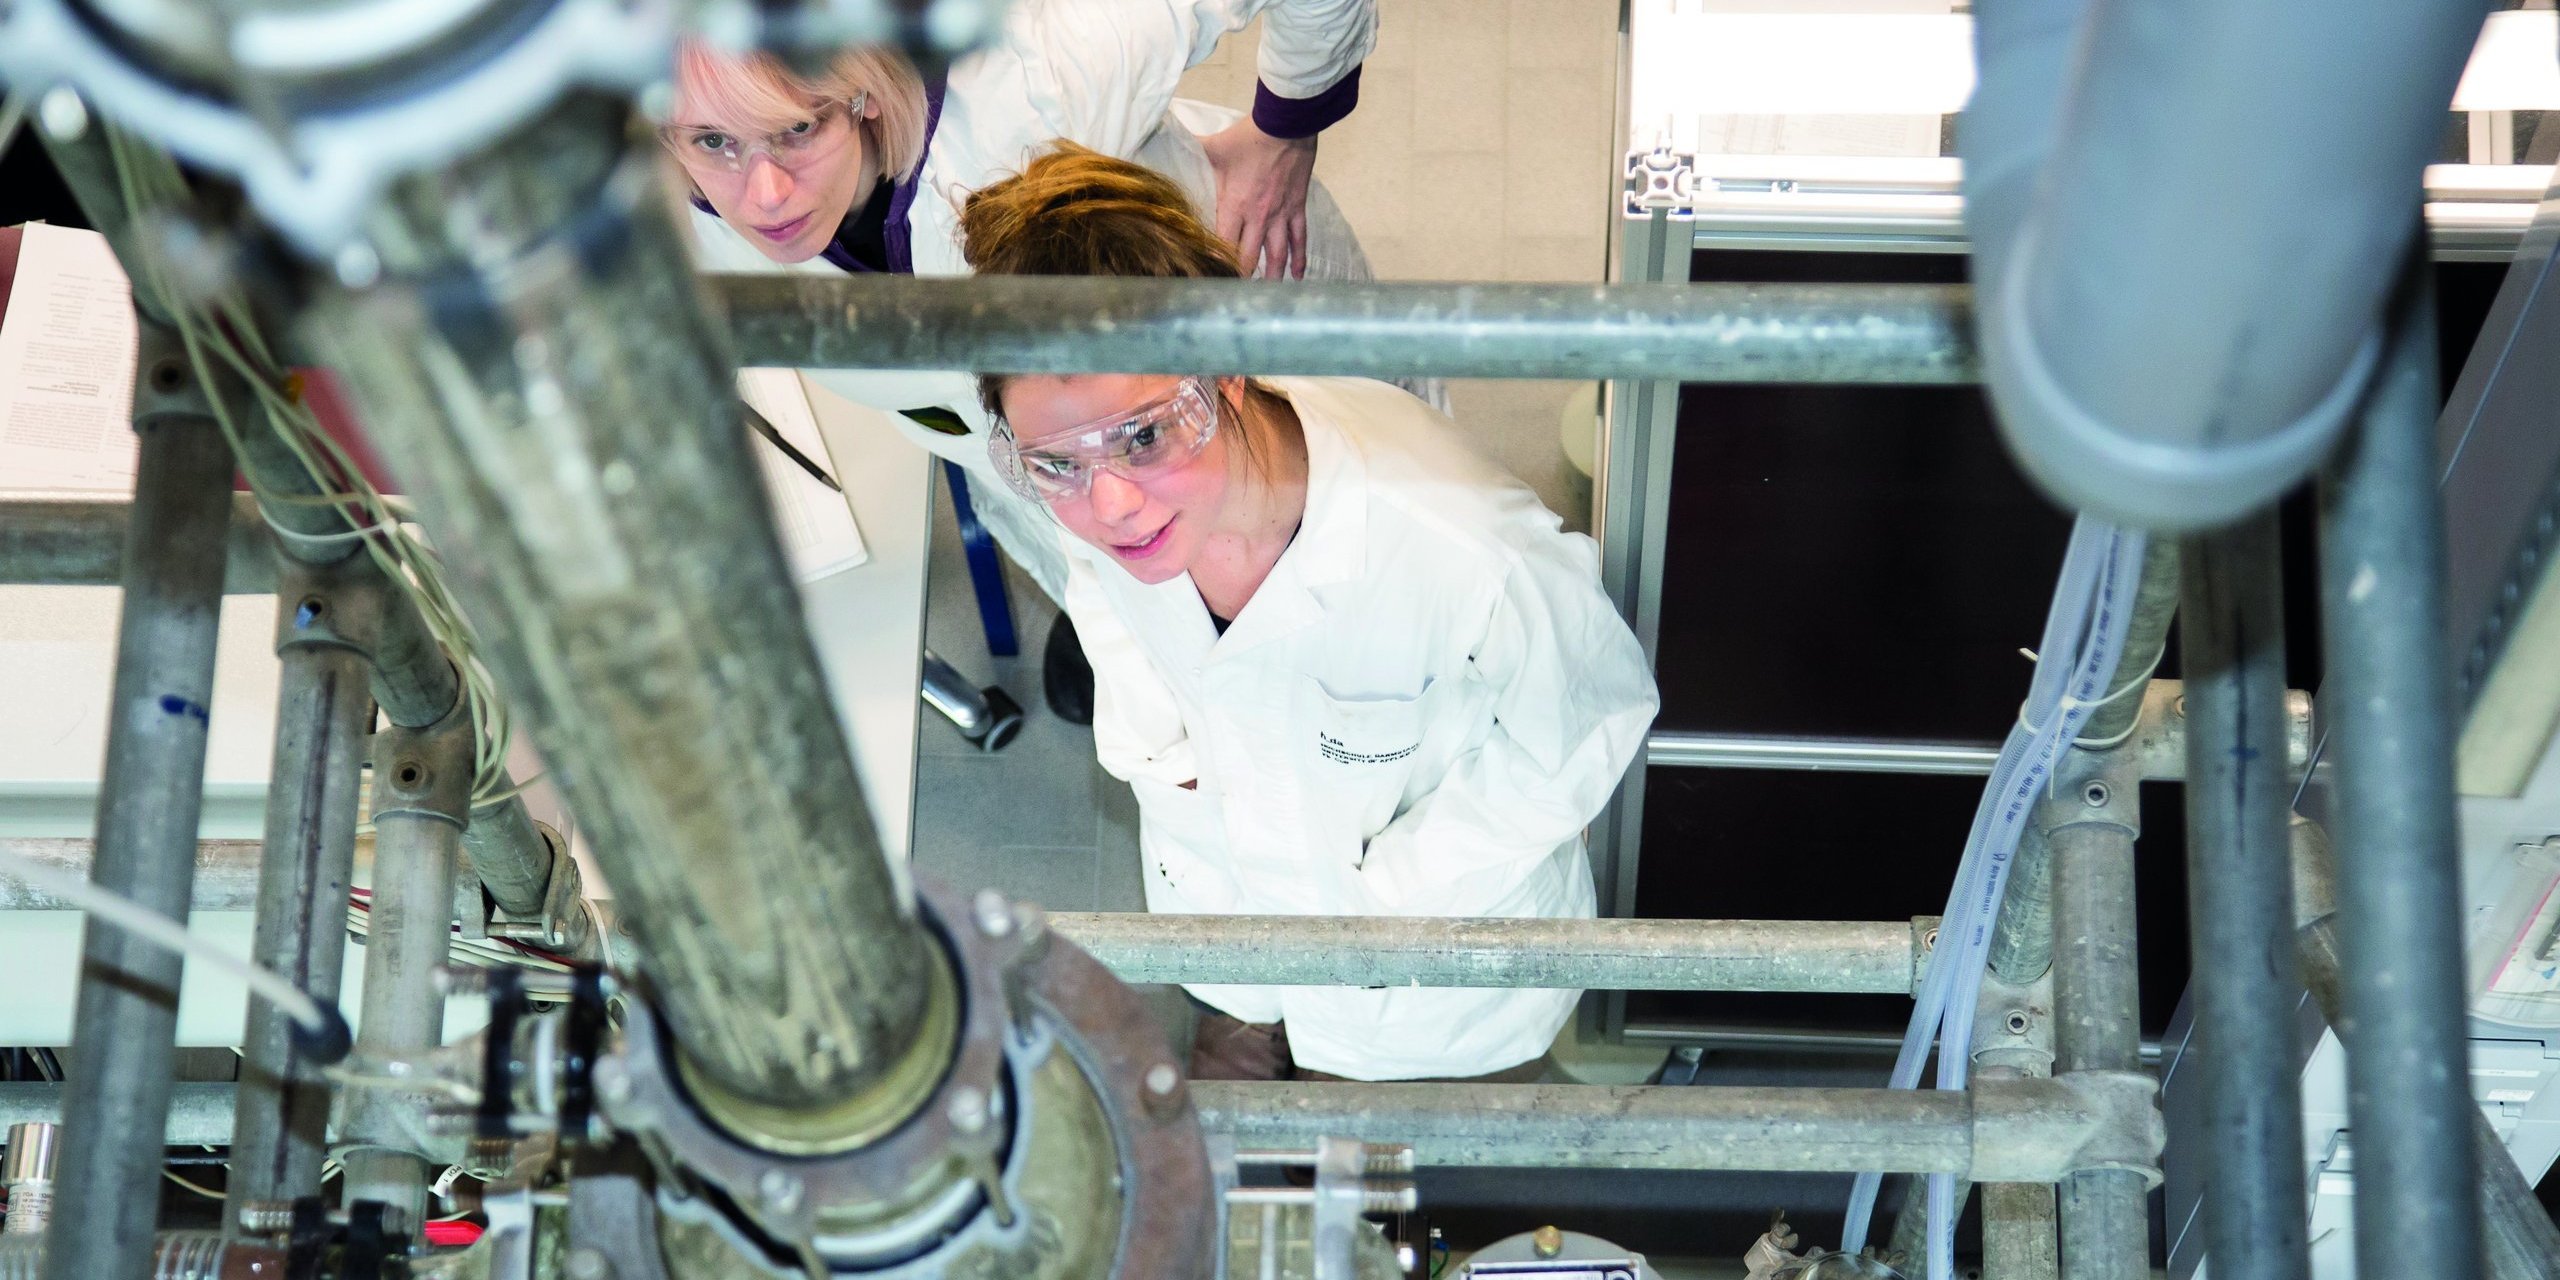 zwei Personen in Laborkitteln mit Schutzbrille schauen von unten in eine Anlage